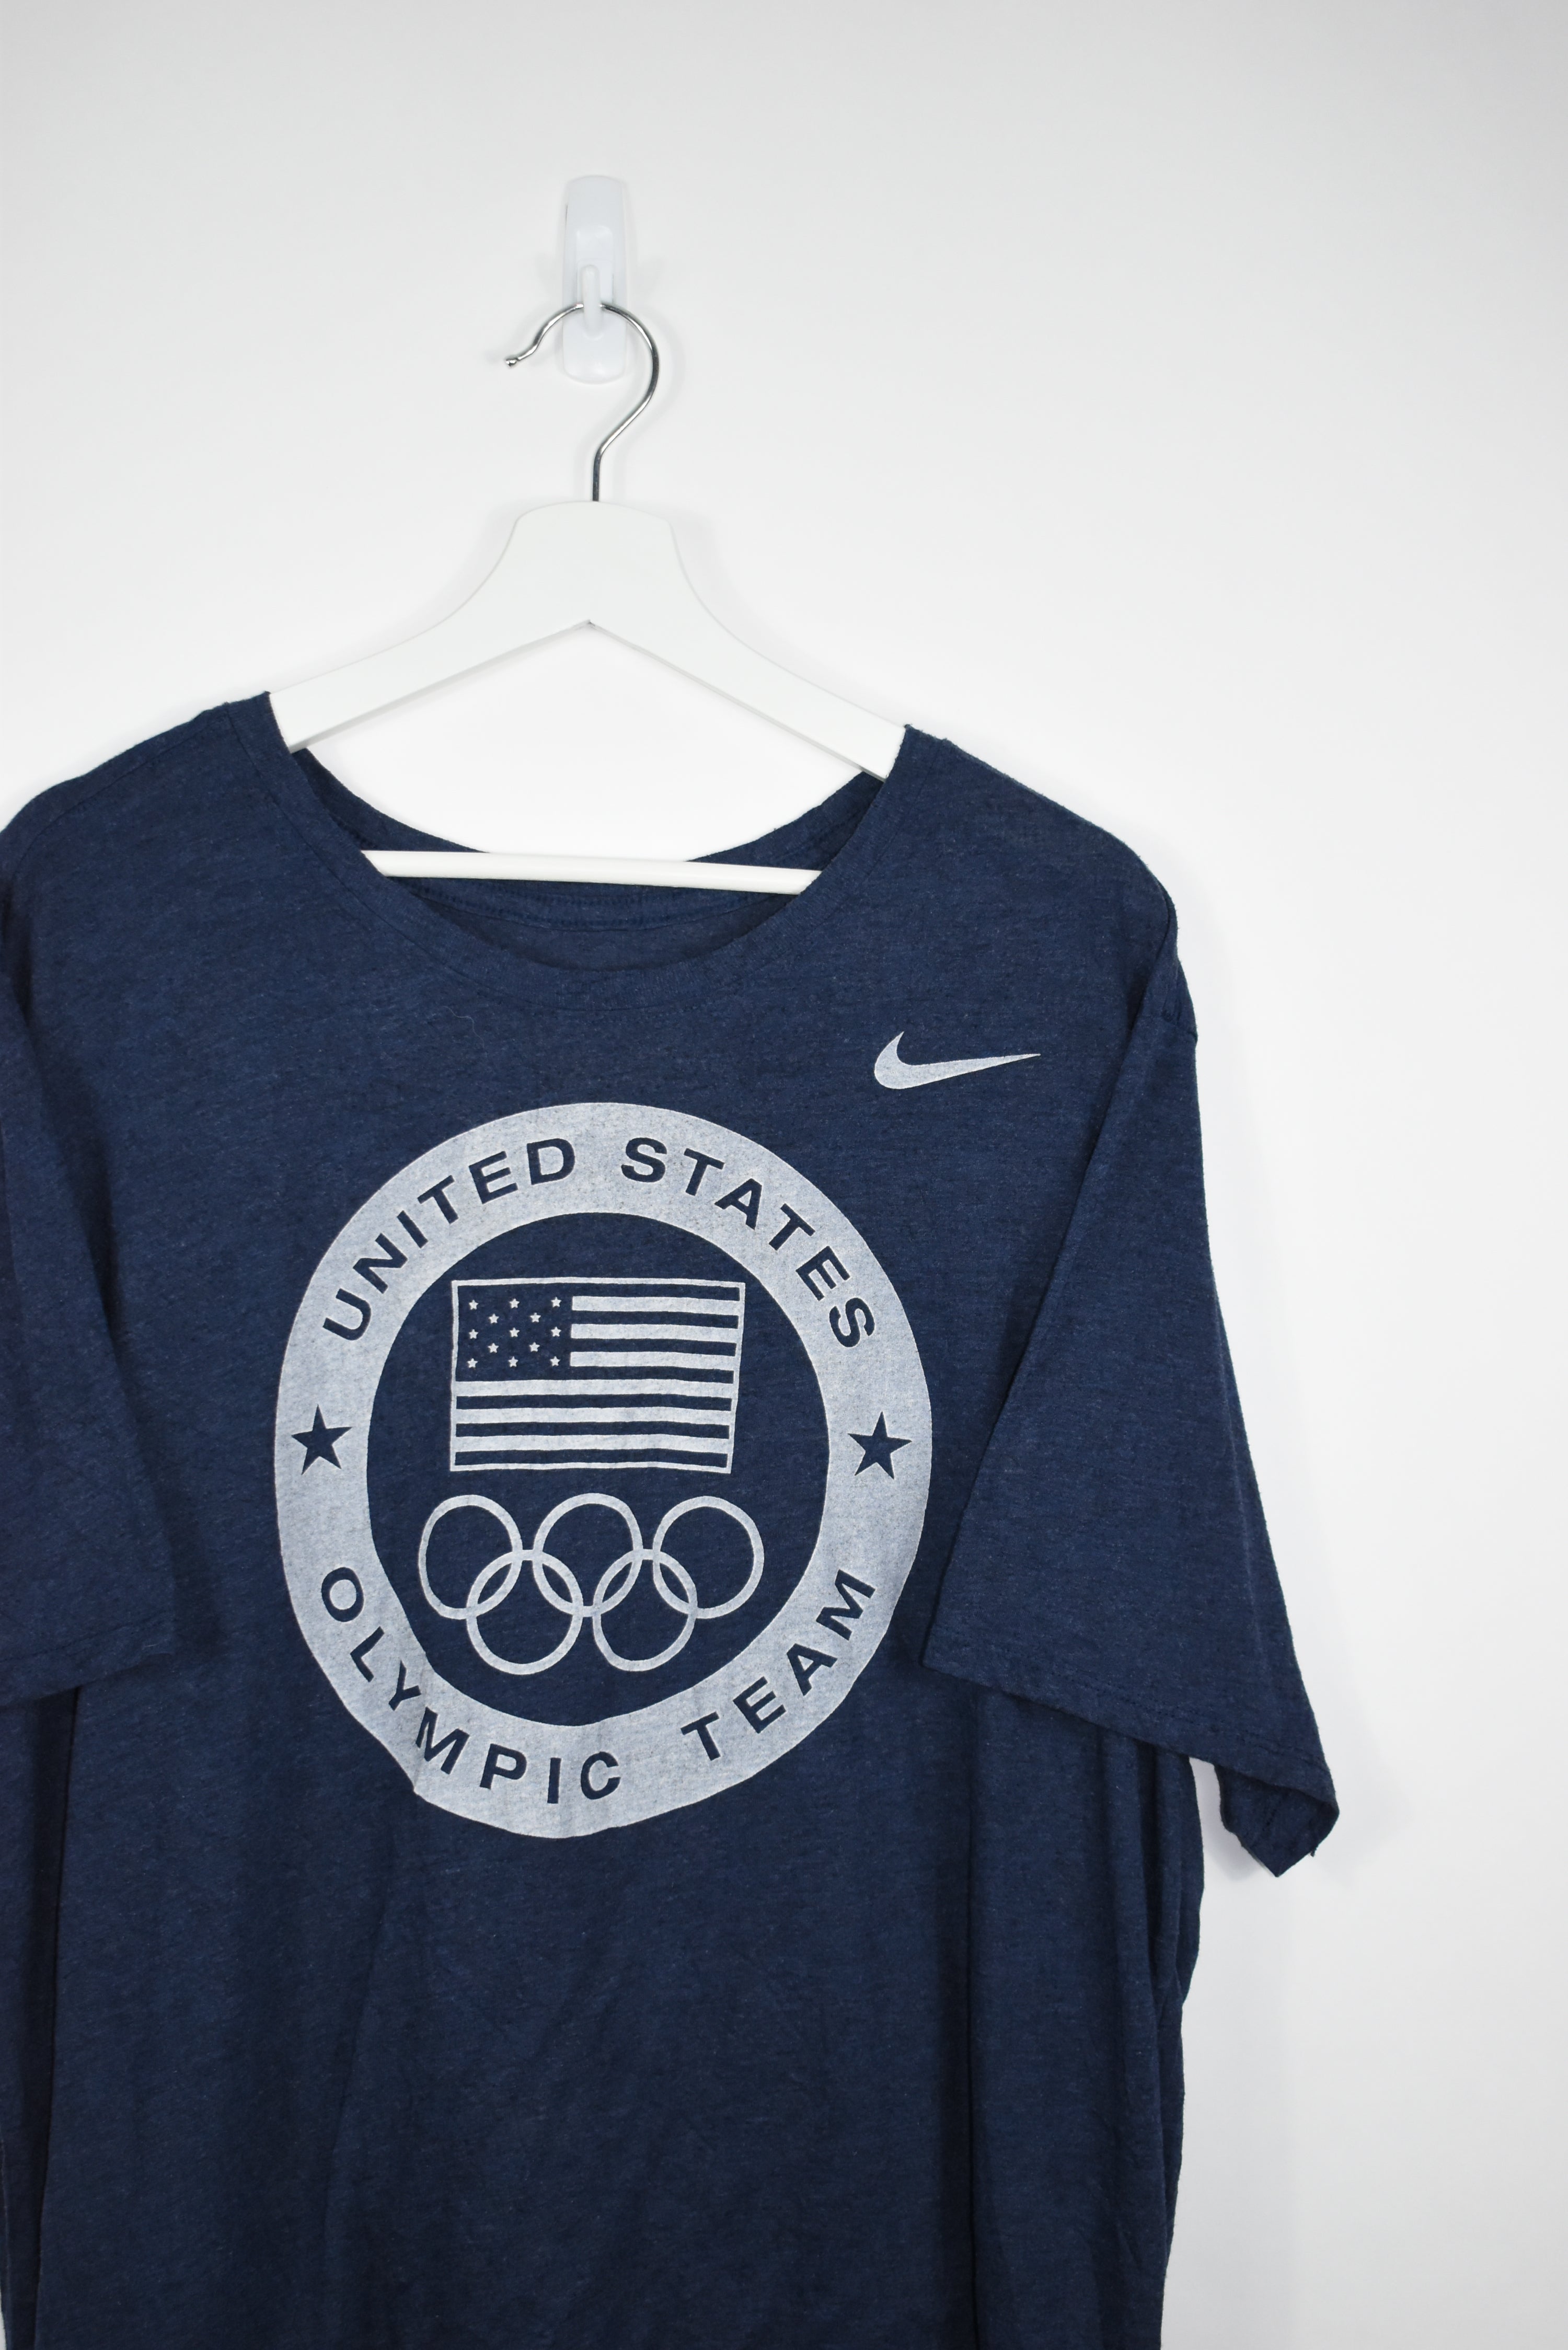 Vintage Nike US Olympic Team Tee XLARGE